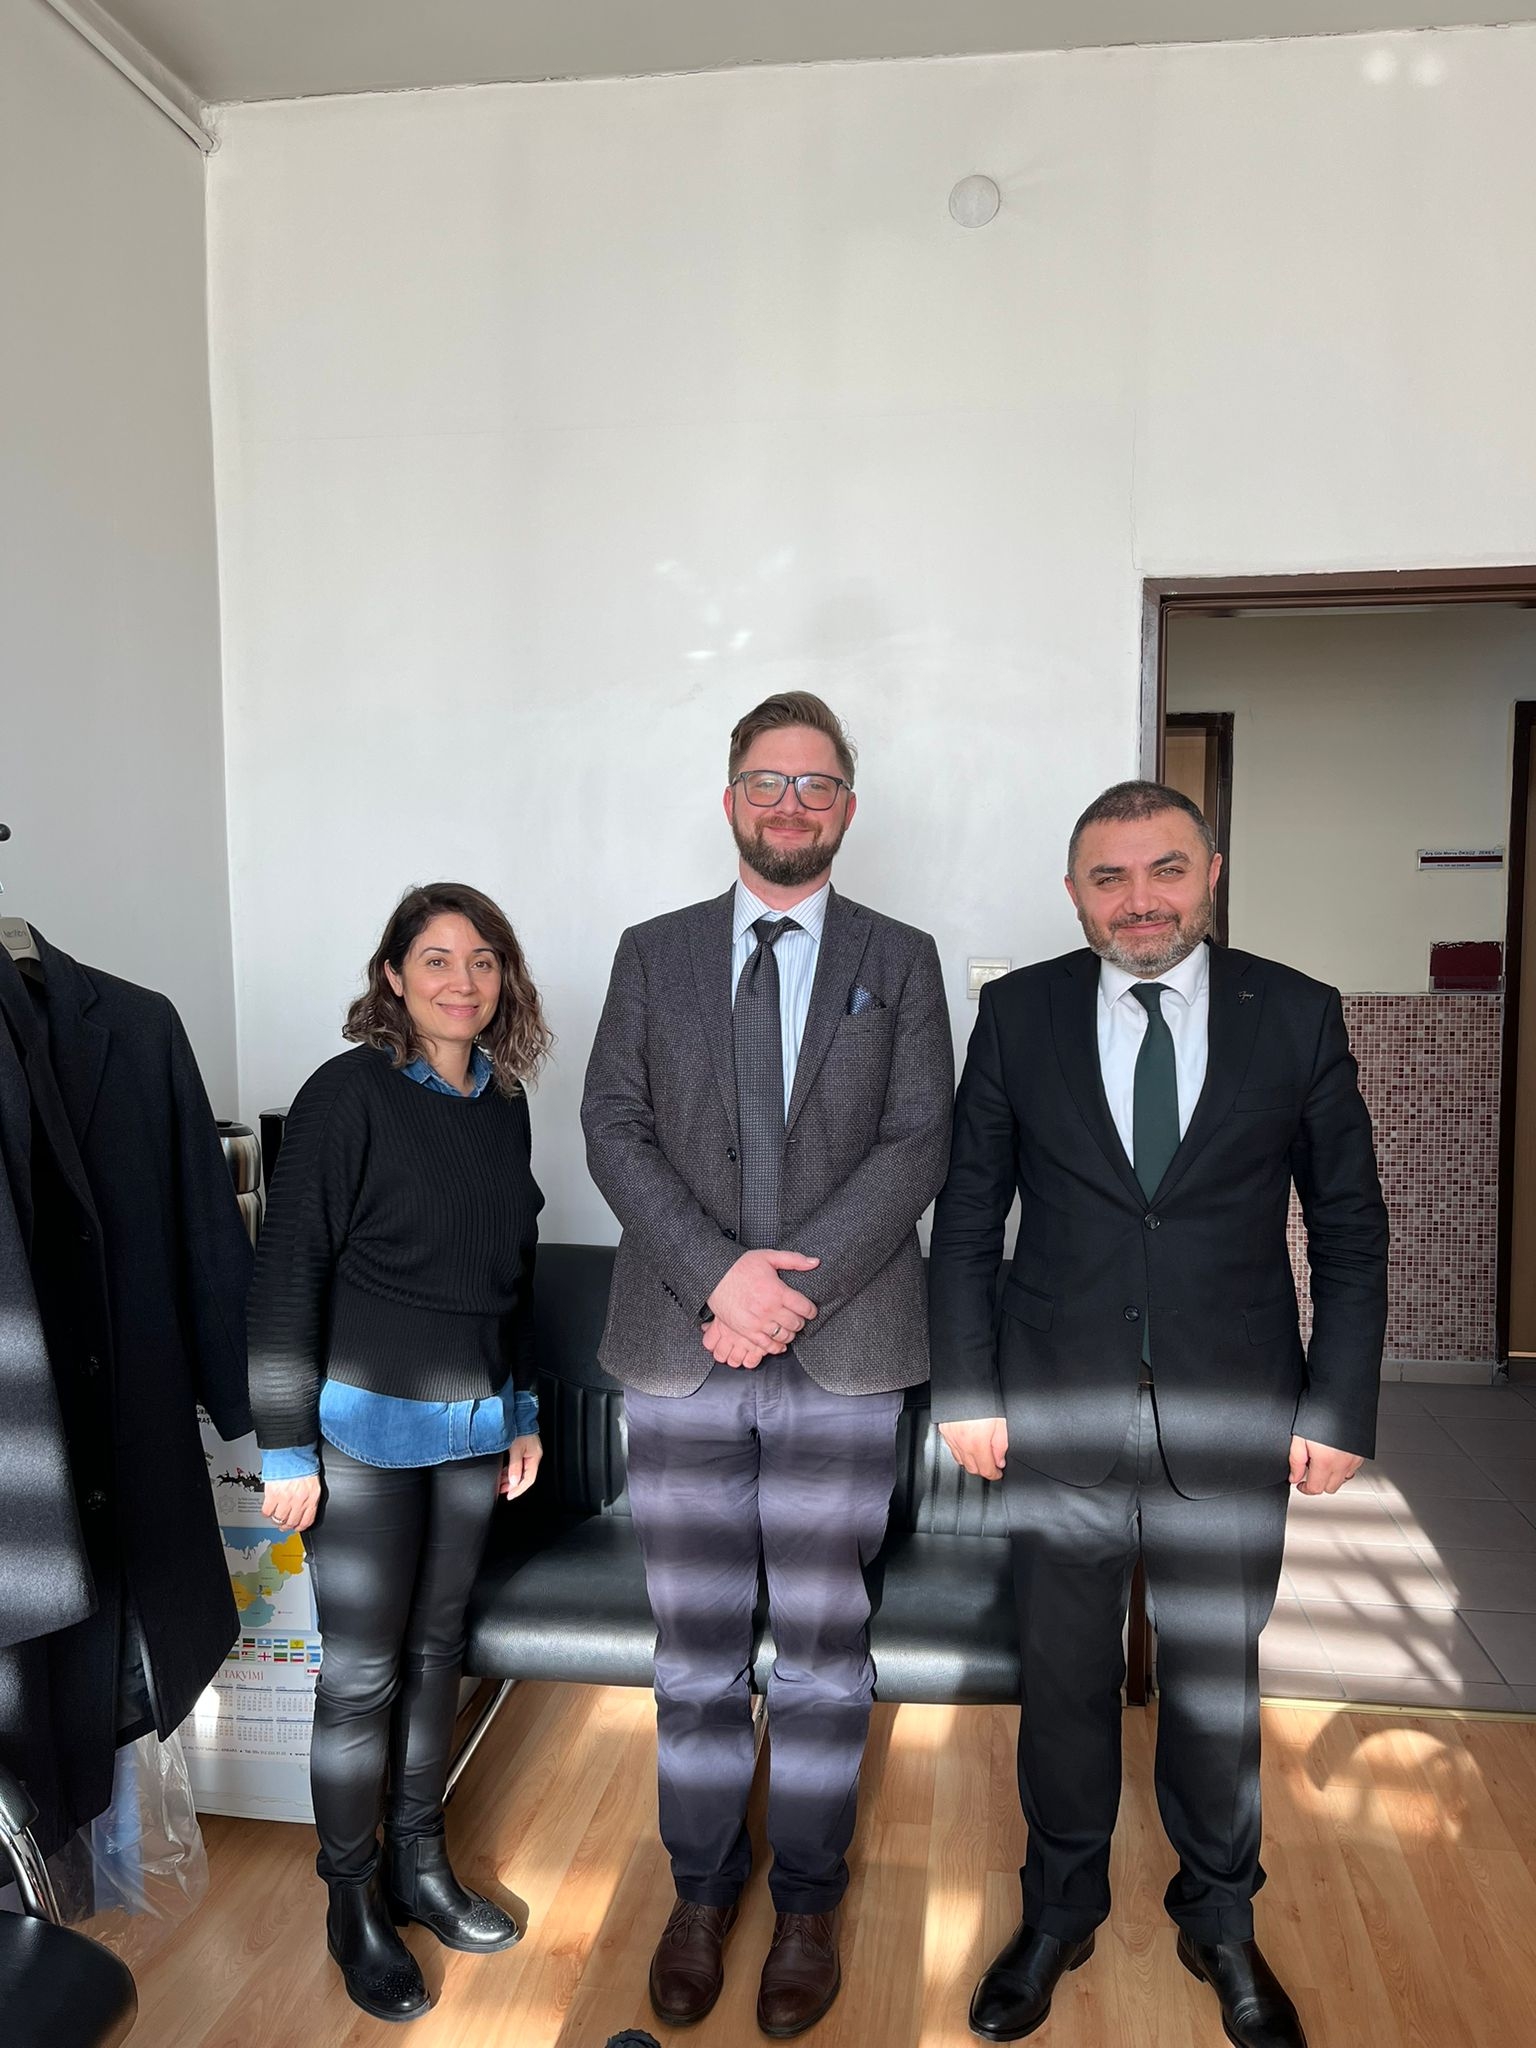 Ankara’daki Goethe Enstitüsü Dil Bölümü Müdürü Philip Schmeußer Anabilim Dalımızı ziyaret etti ve yabancı dil olarak Almanca eğitimi alanında yeni ikili işbirliklerin sağlanabileceği konusunda görüşmeler gerçekleşti.-1